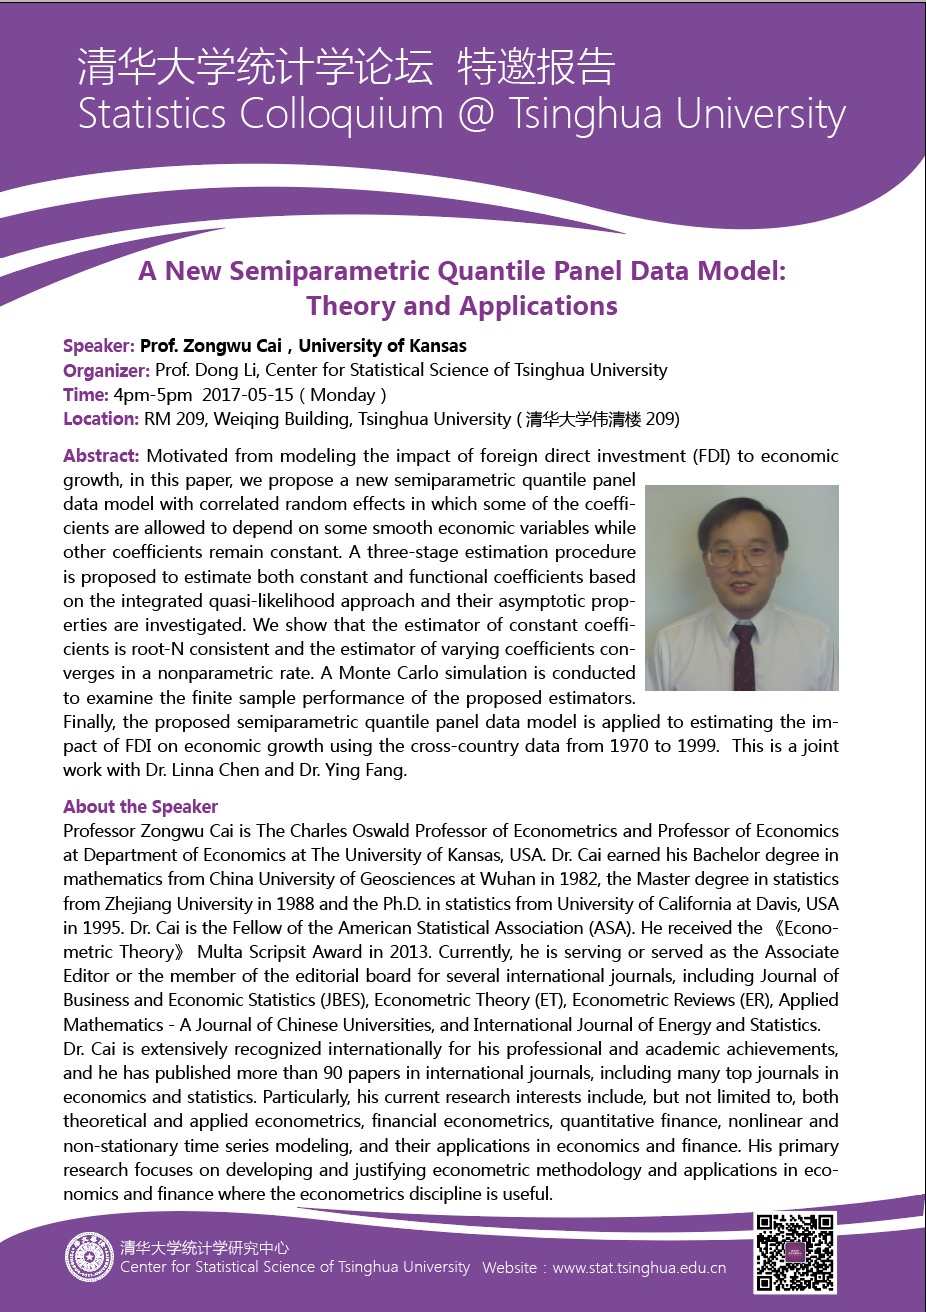 【统计学论坛】A New Semiparametric Quantile Panel Data Model: Theory and Applications